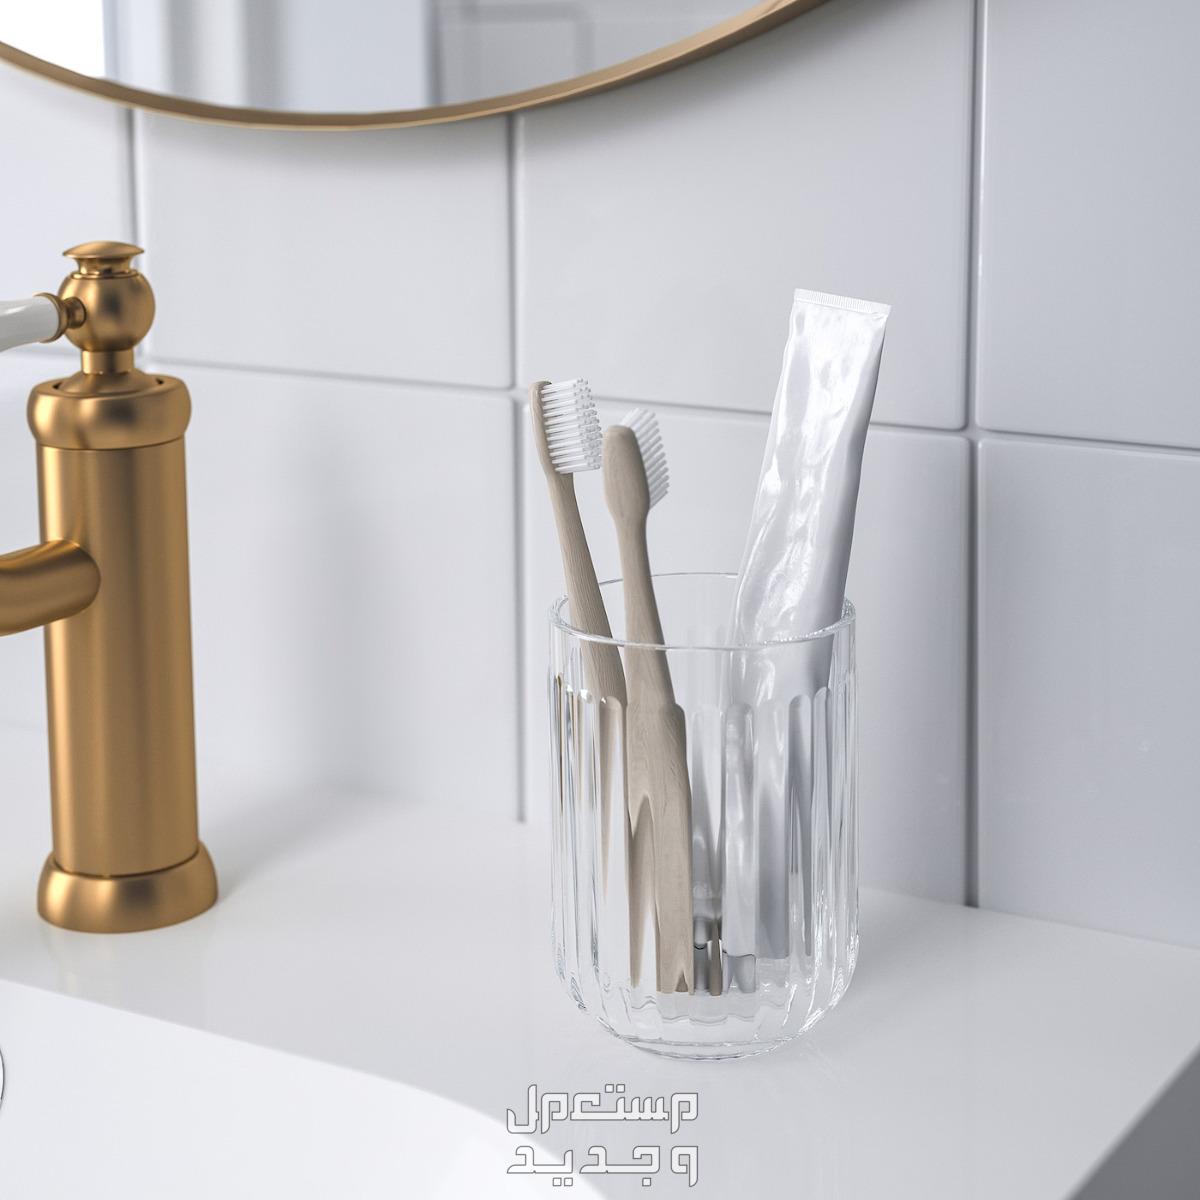 تعرفي على أفضل 10 طرق لتنظيف حمام المنزل في الإمارات العربية المتحدة تنظيف حامل فرش الأسنان